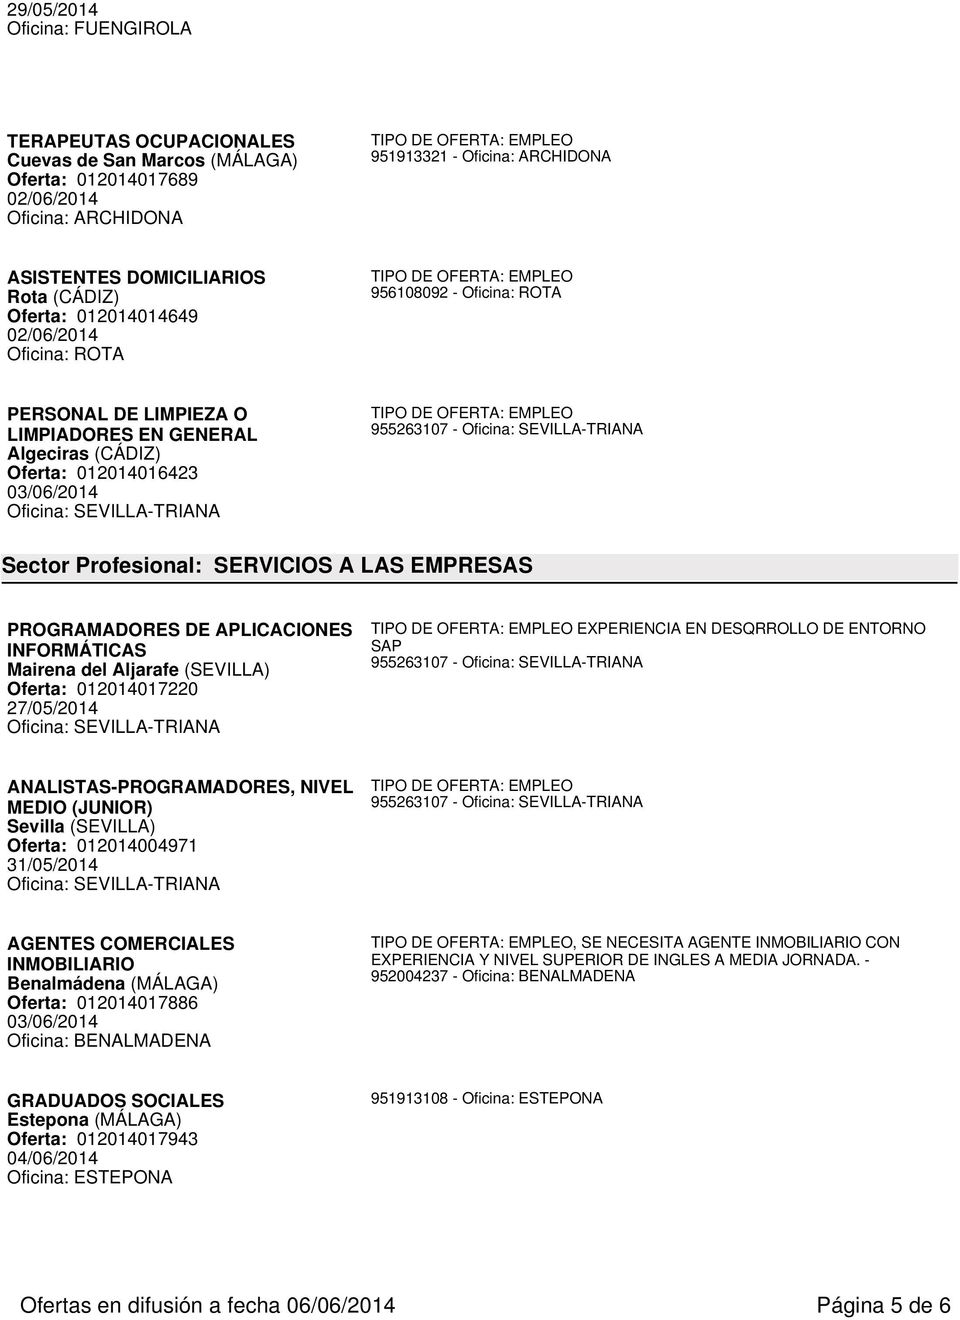 APLICACIONES INFORMÁTICAS Mairena del Aljarafe (SEVILLA) Oferta: 012014017220 27/05/2014 EXPERIENCIA EN DESQRROLLO DE ENTORNO SAP ANALISTAS-PROGRAMADORES, NIVEL MEDIO (JUNIOR) Sevilla (SEVILLA)